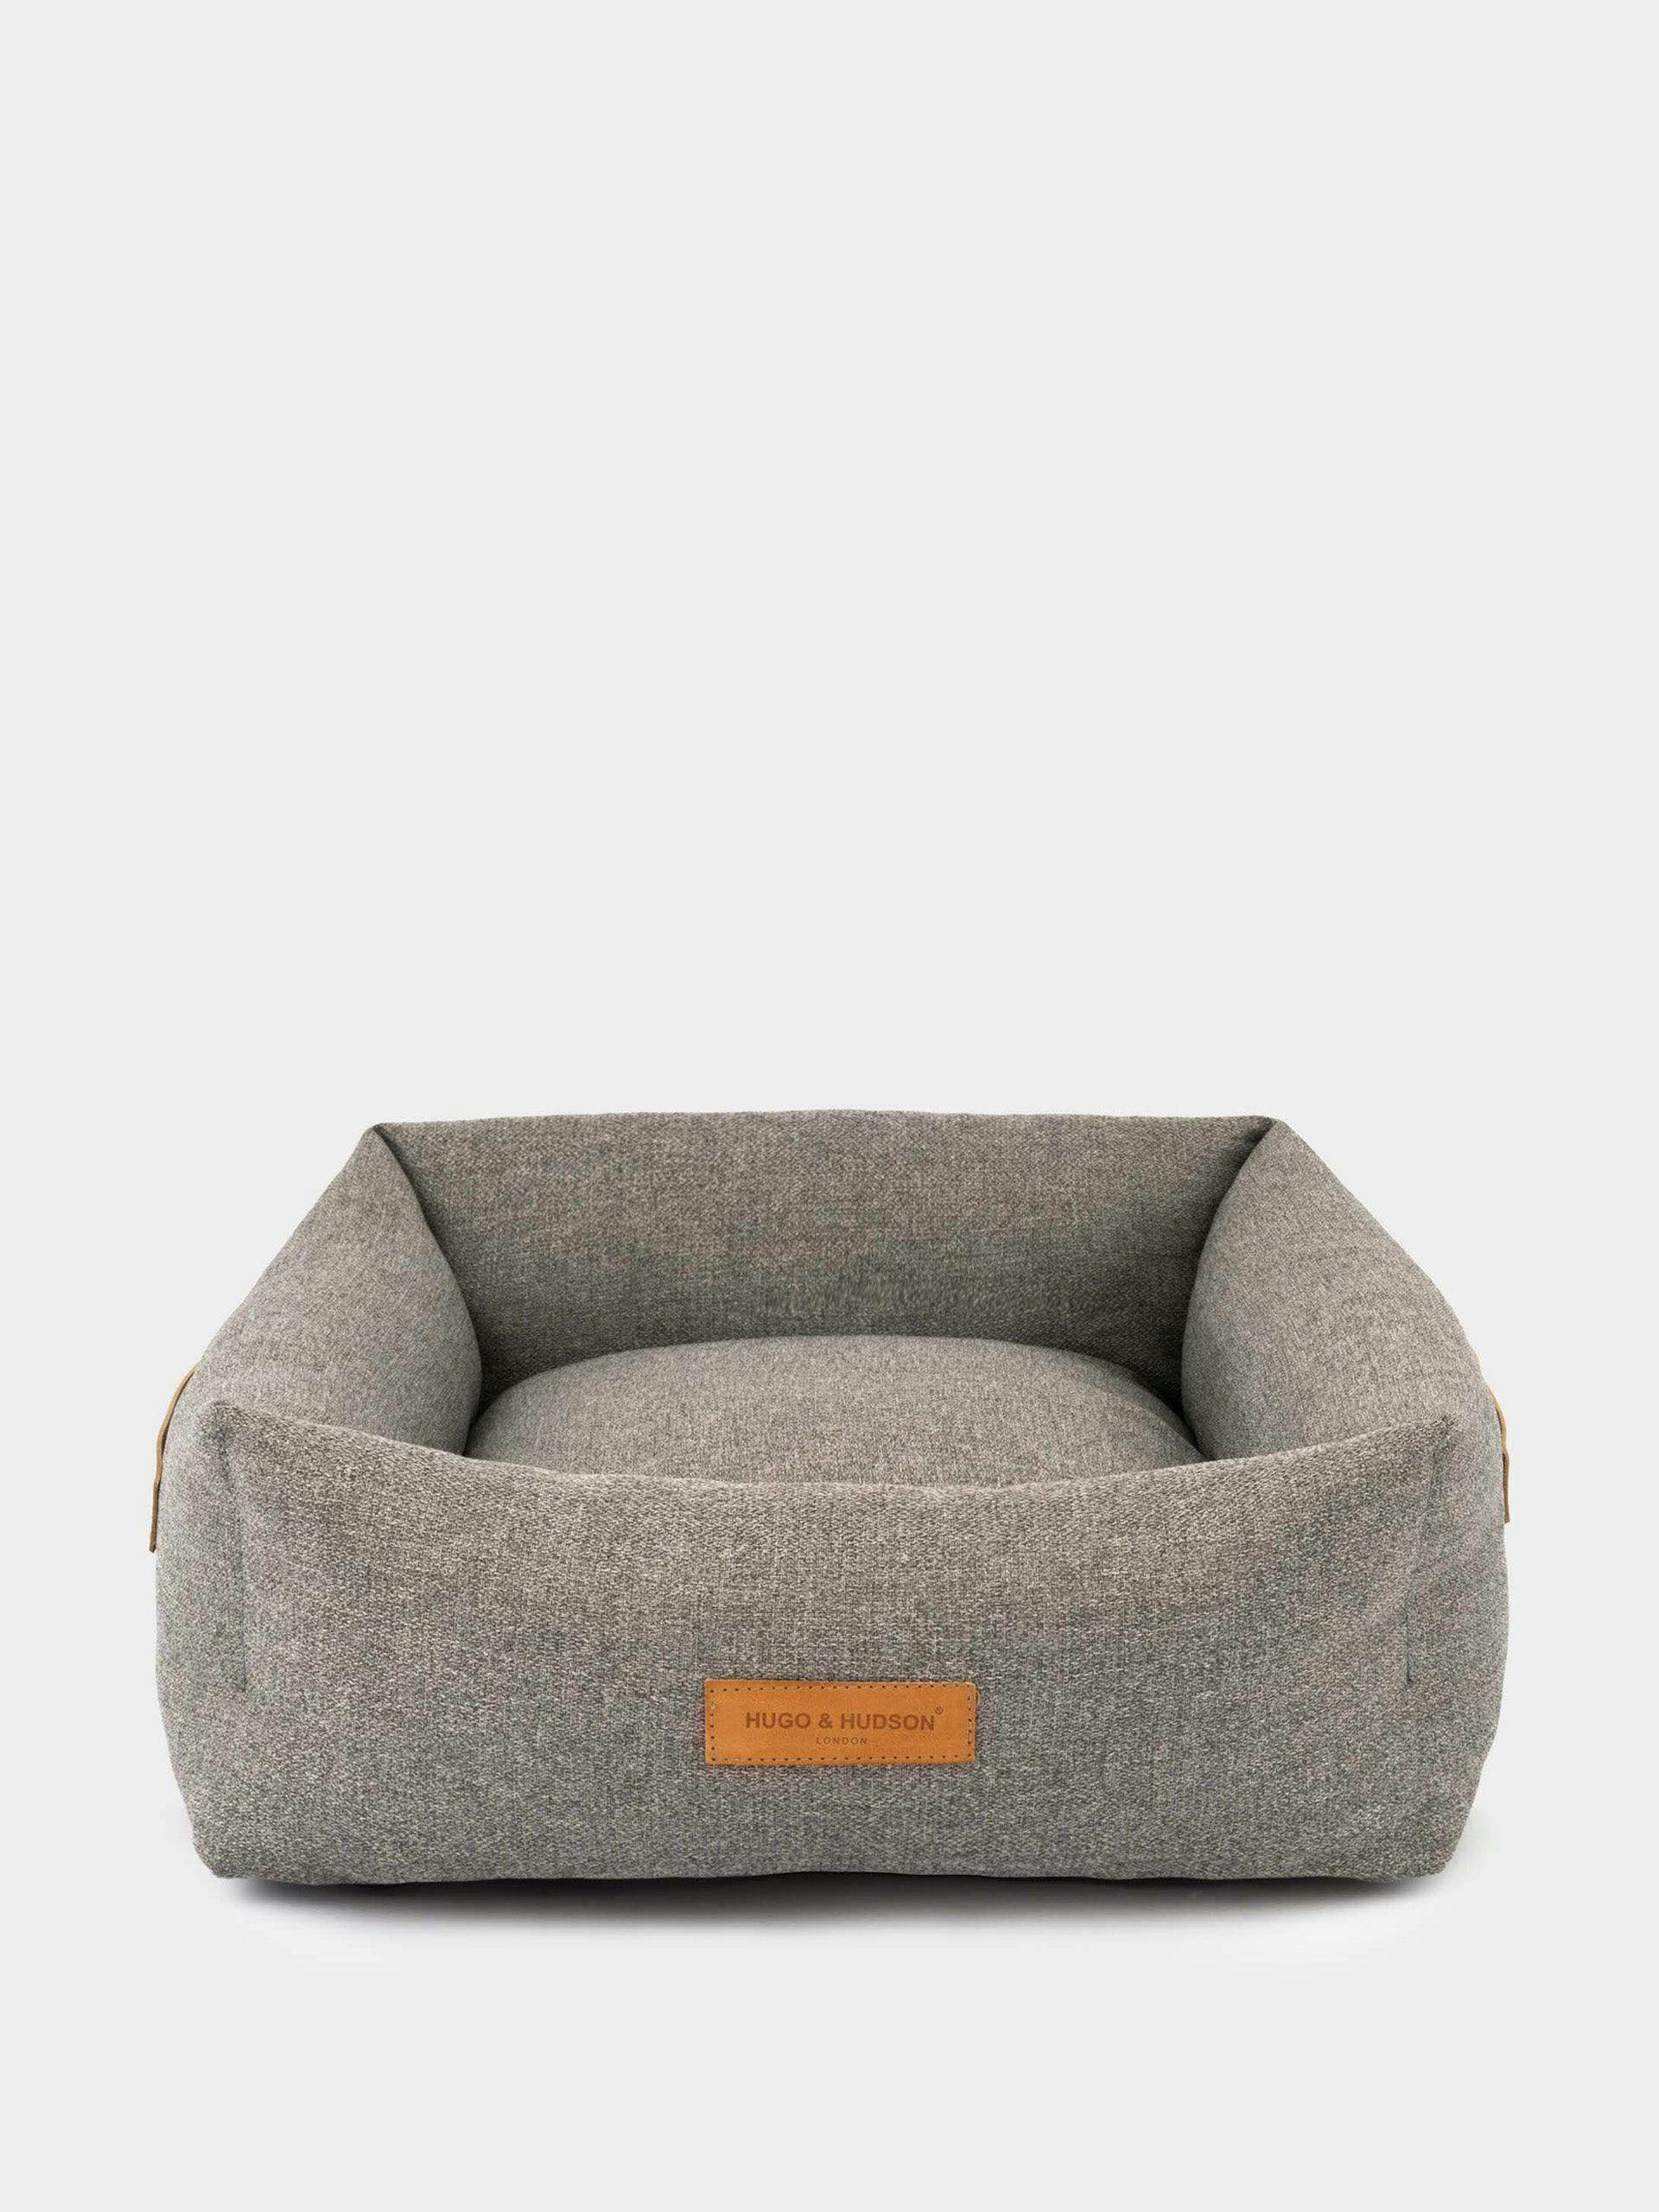 Stone grey luxury dog bed